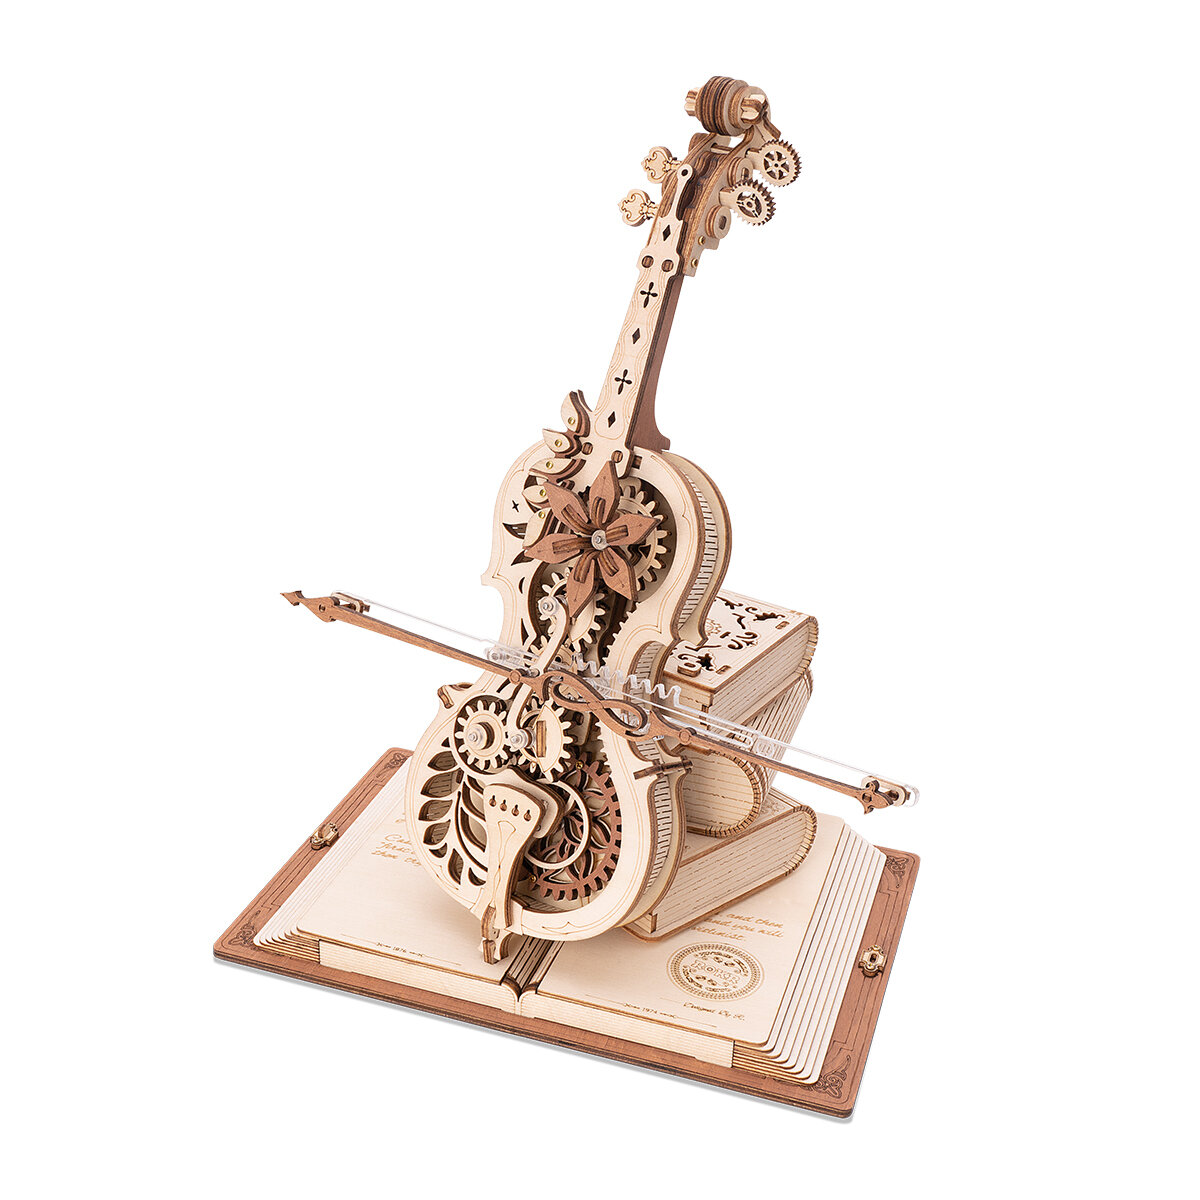 Træmekanisk 3D-puslespil - Musikdåse magisk cello ROKR AMK63